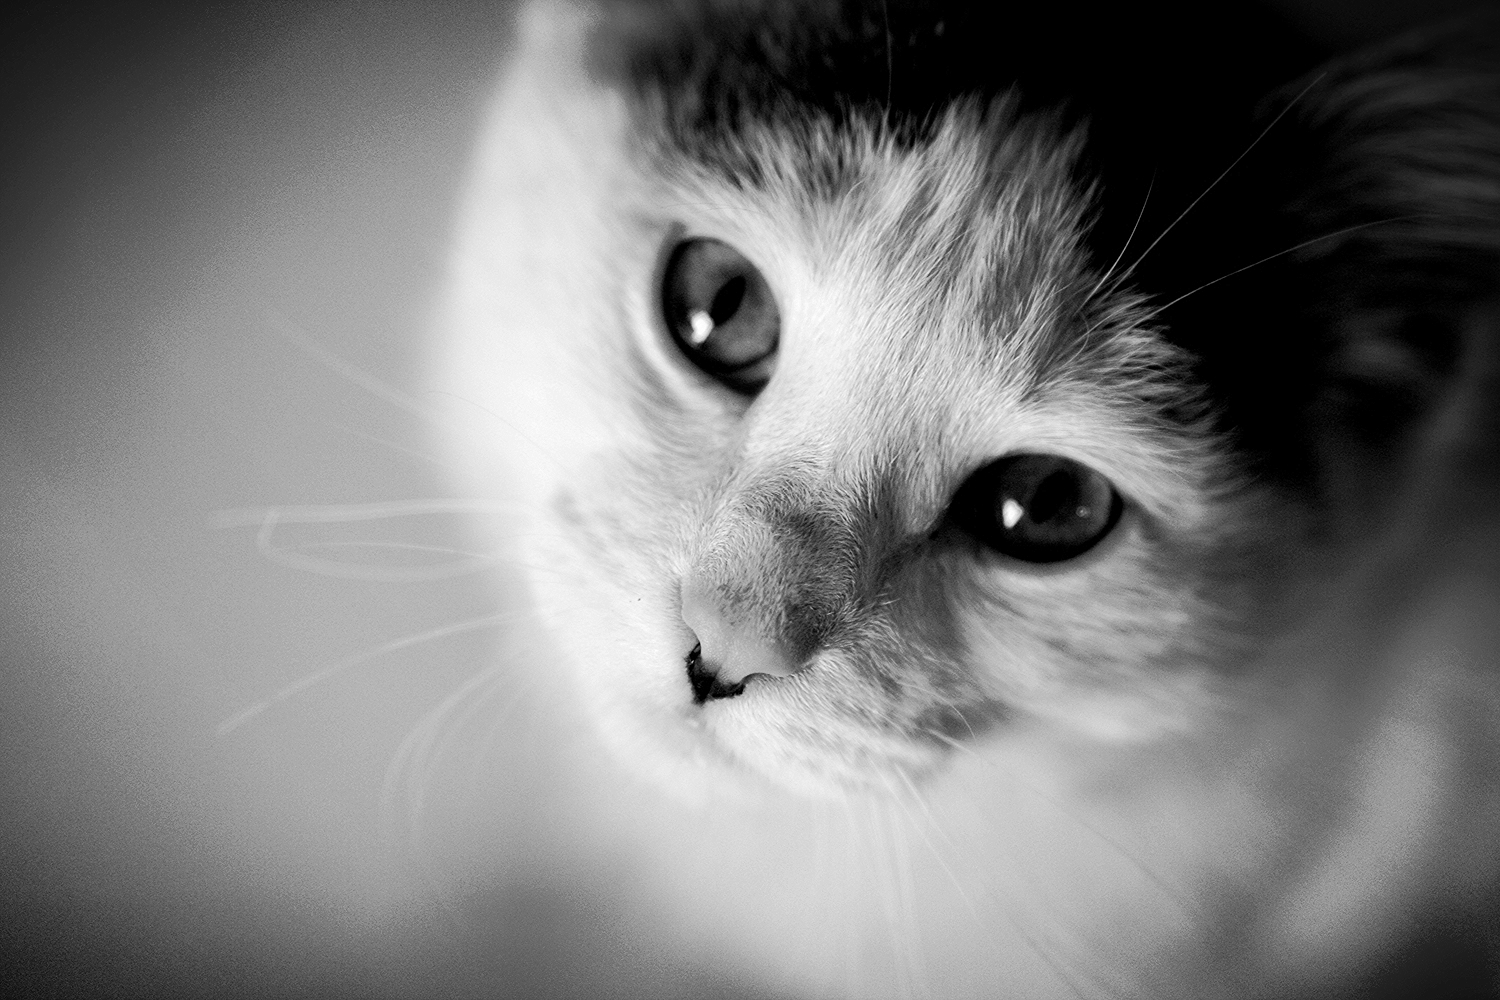 Cat_Cute.JPG